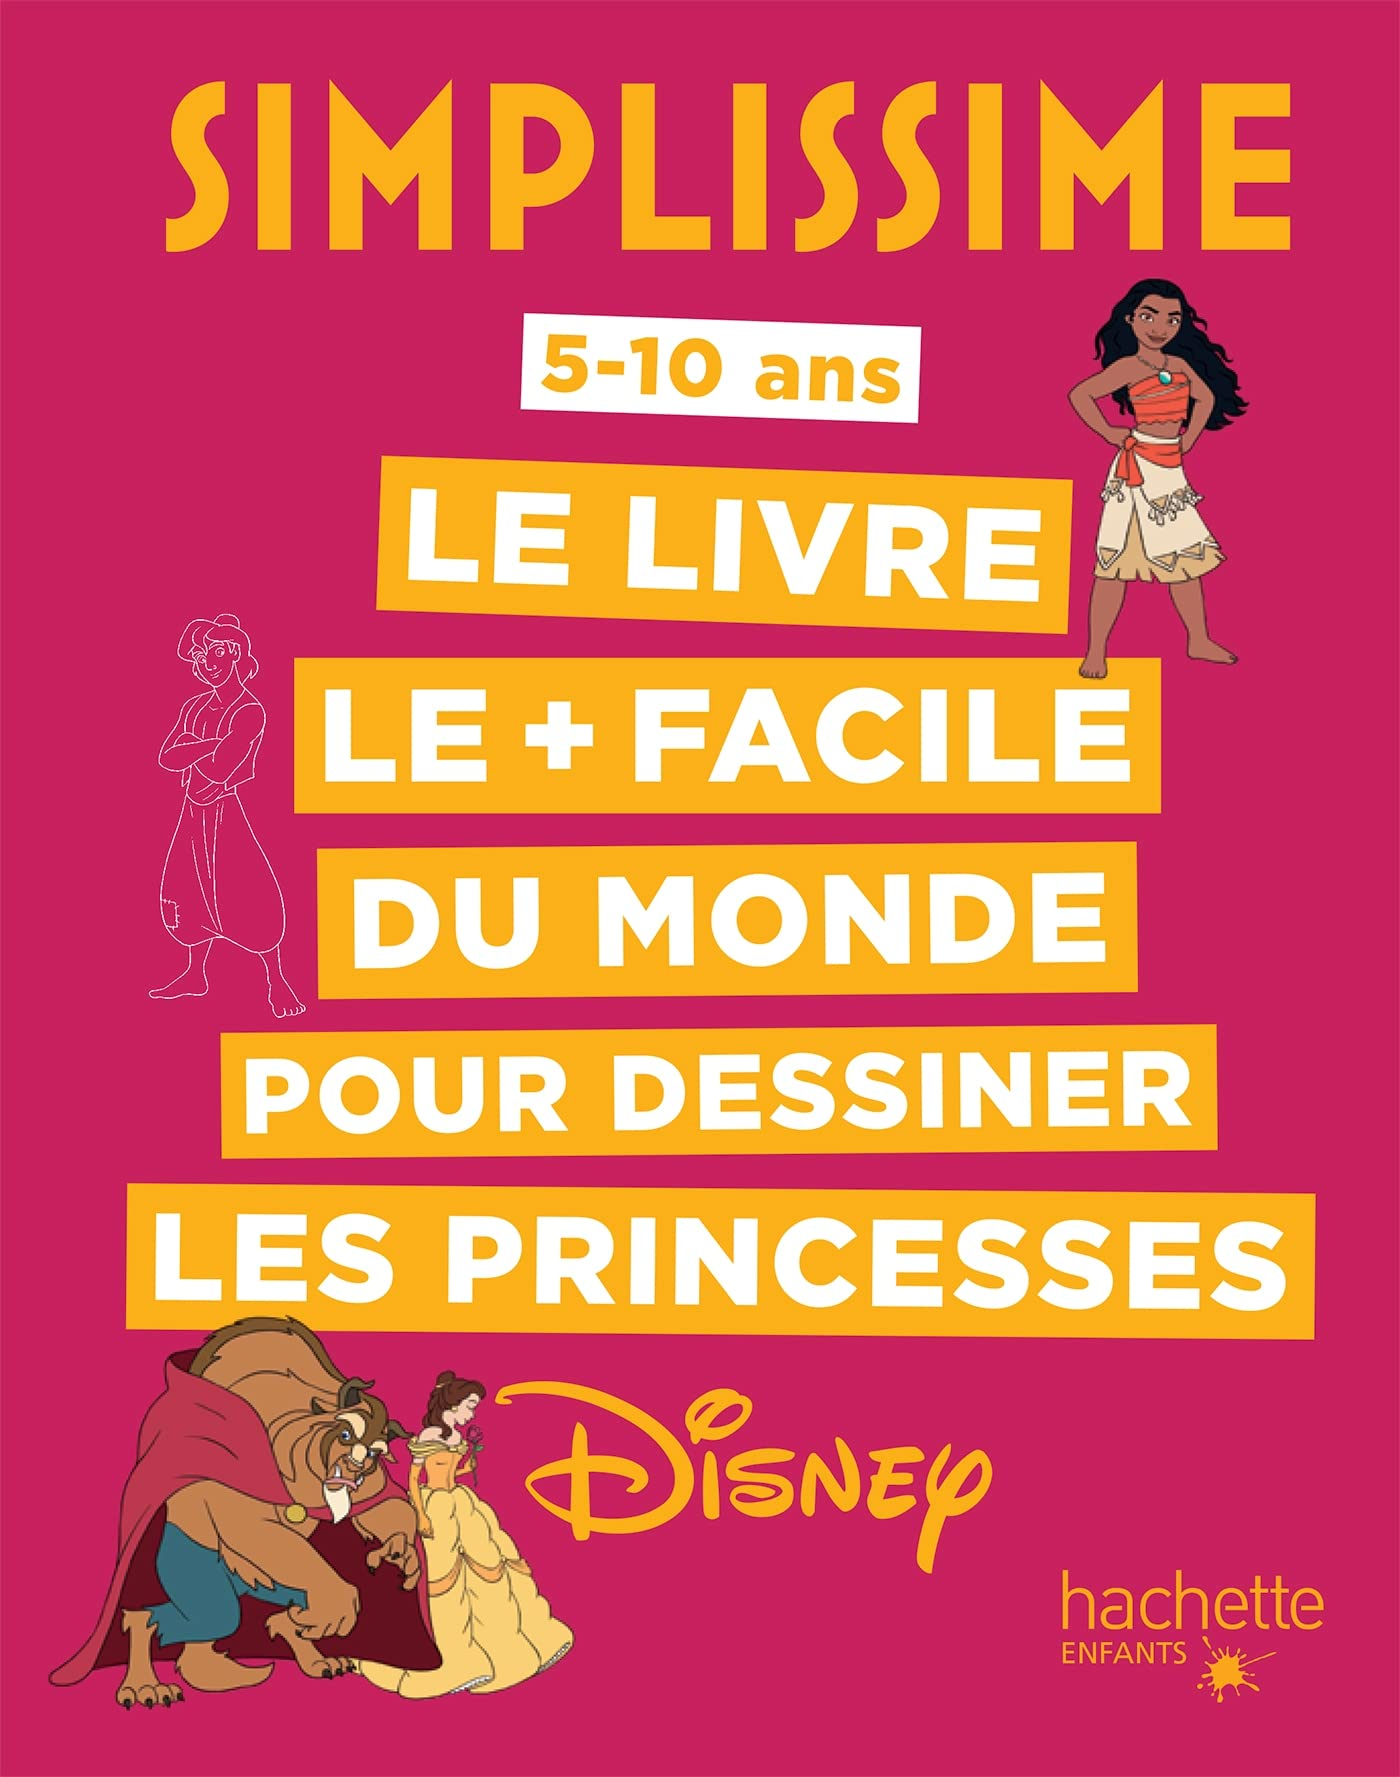 Simplissime : le livre le + facile du monde pour dessiner les princesses Disney : 5-10 ans